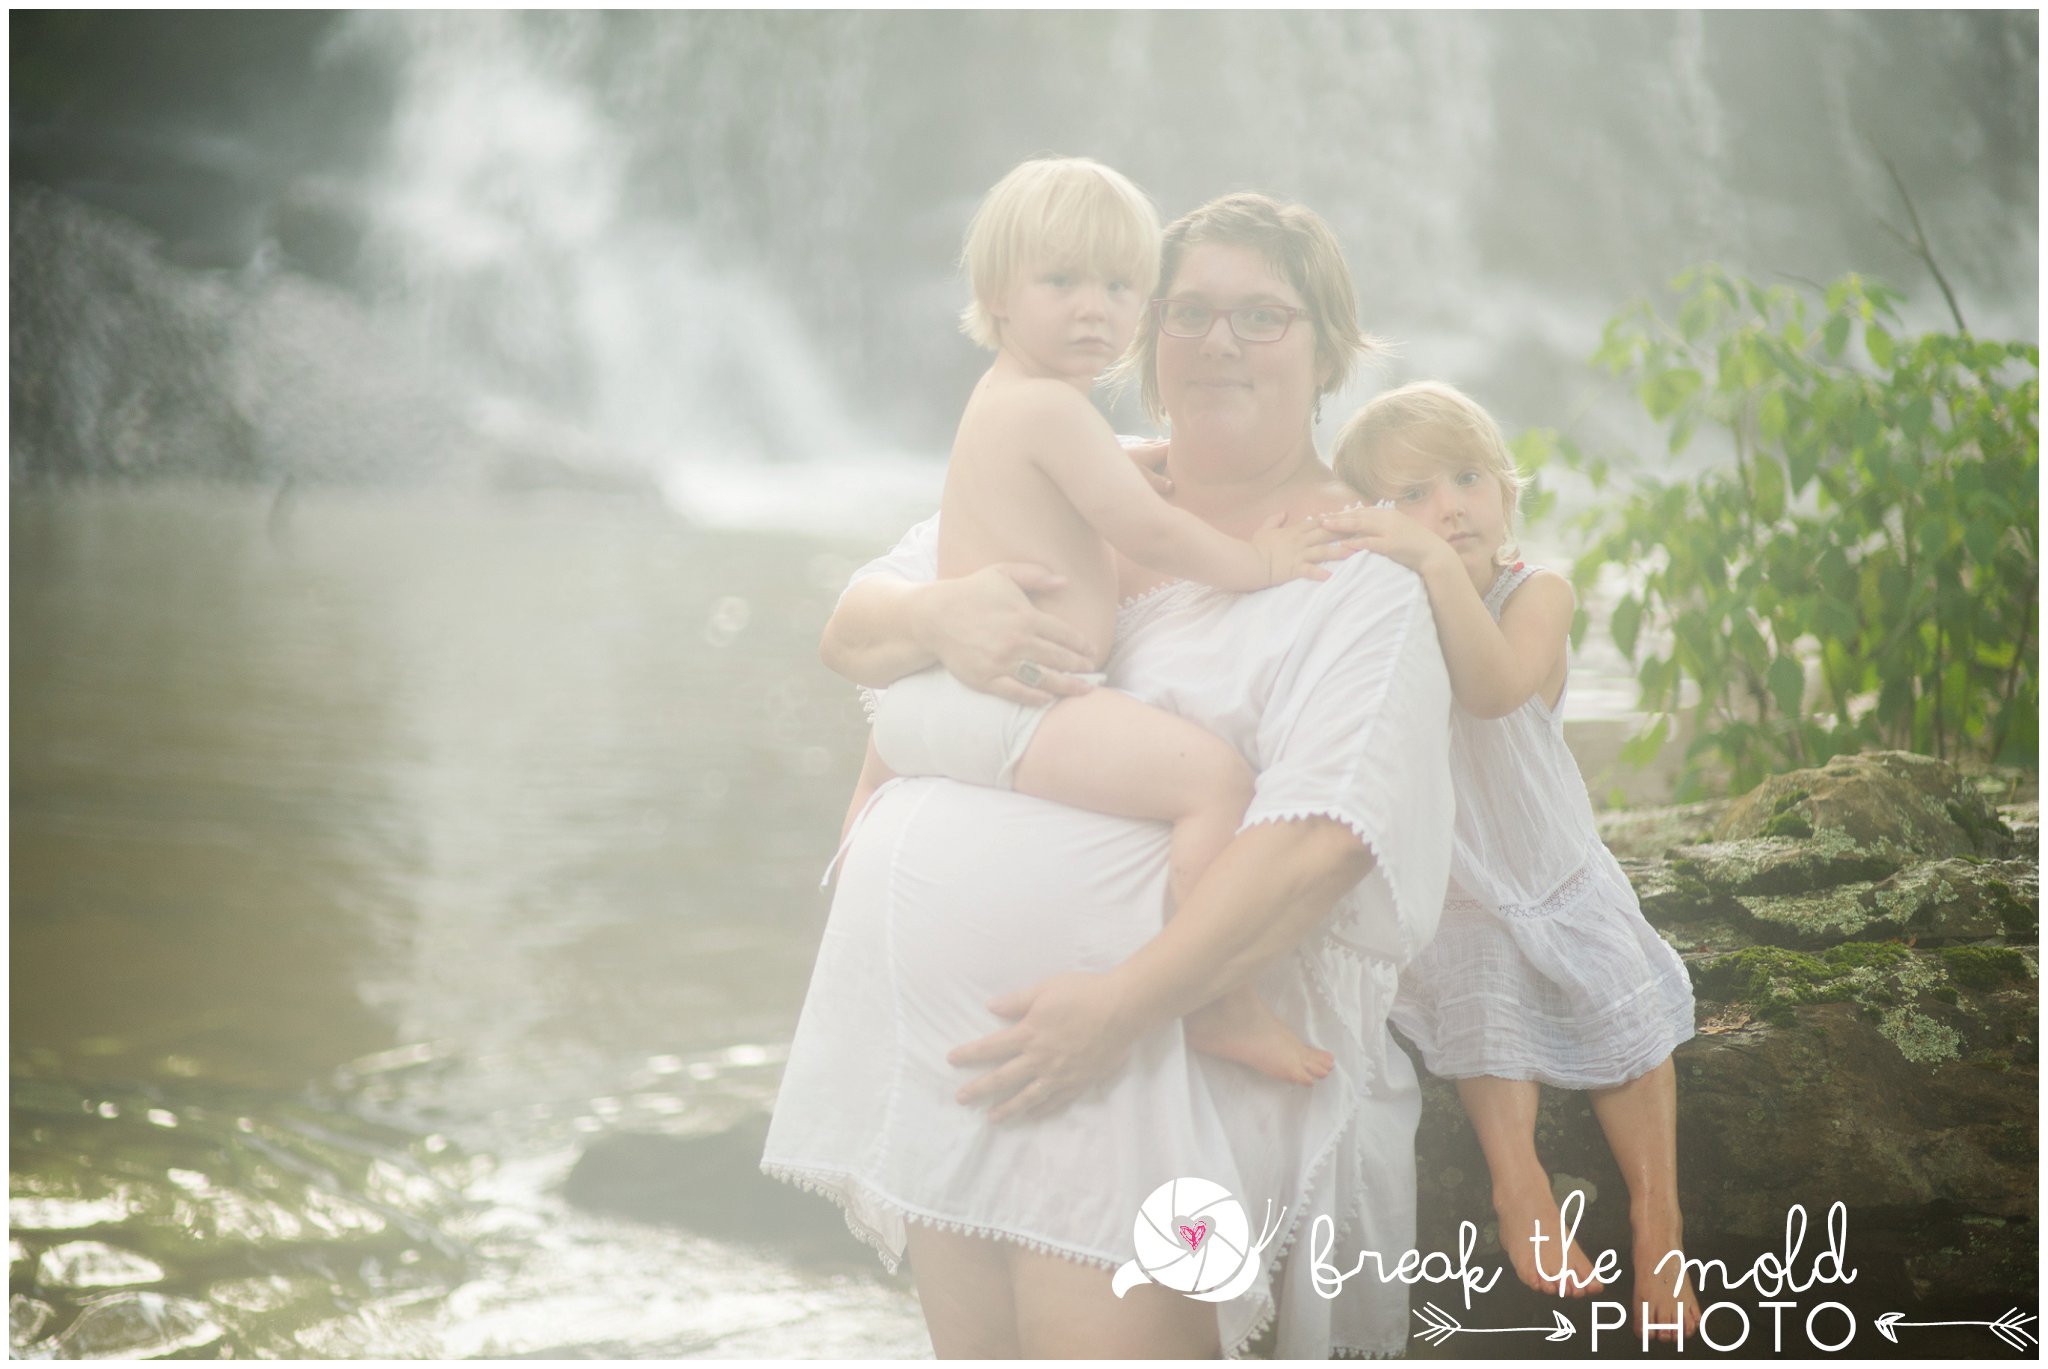 break-the-mold-photo-nursing-mothers-waterfall-women-celebrate-beauty_5435.jpg